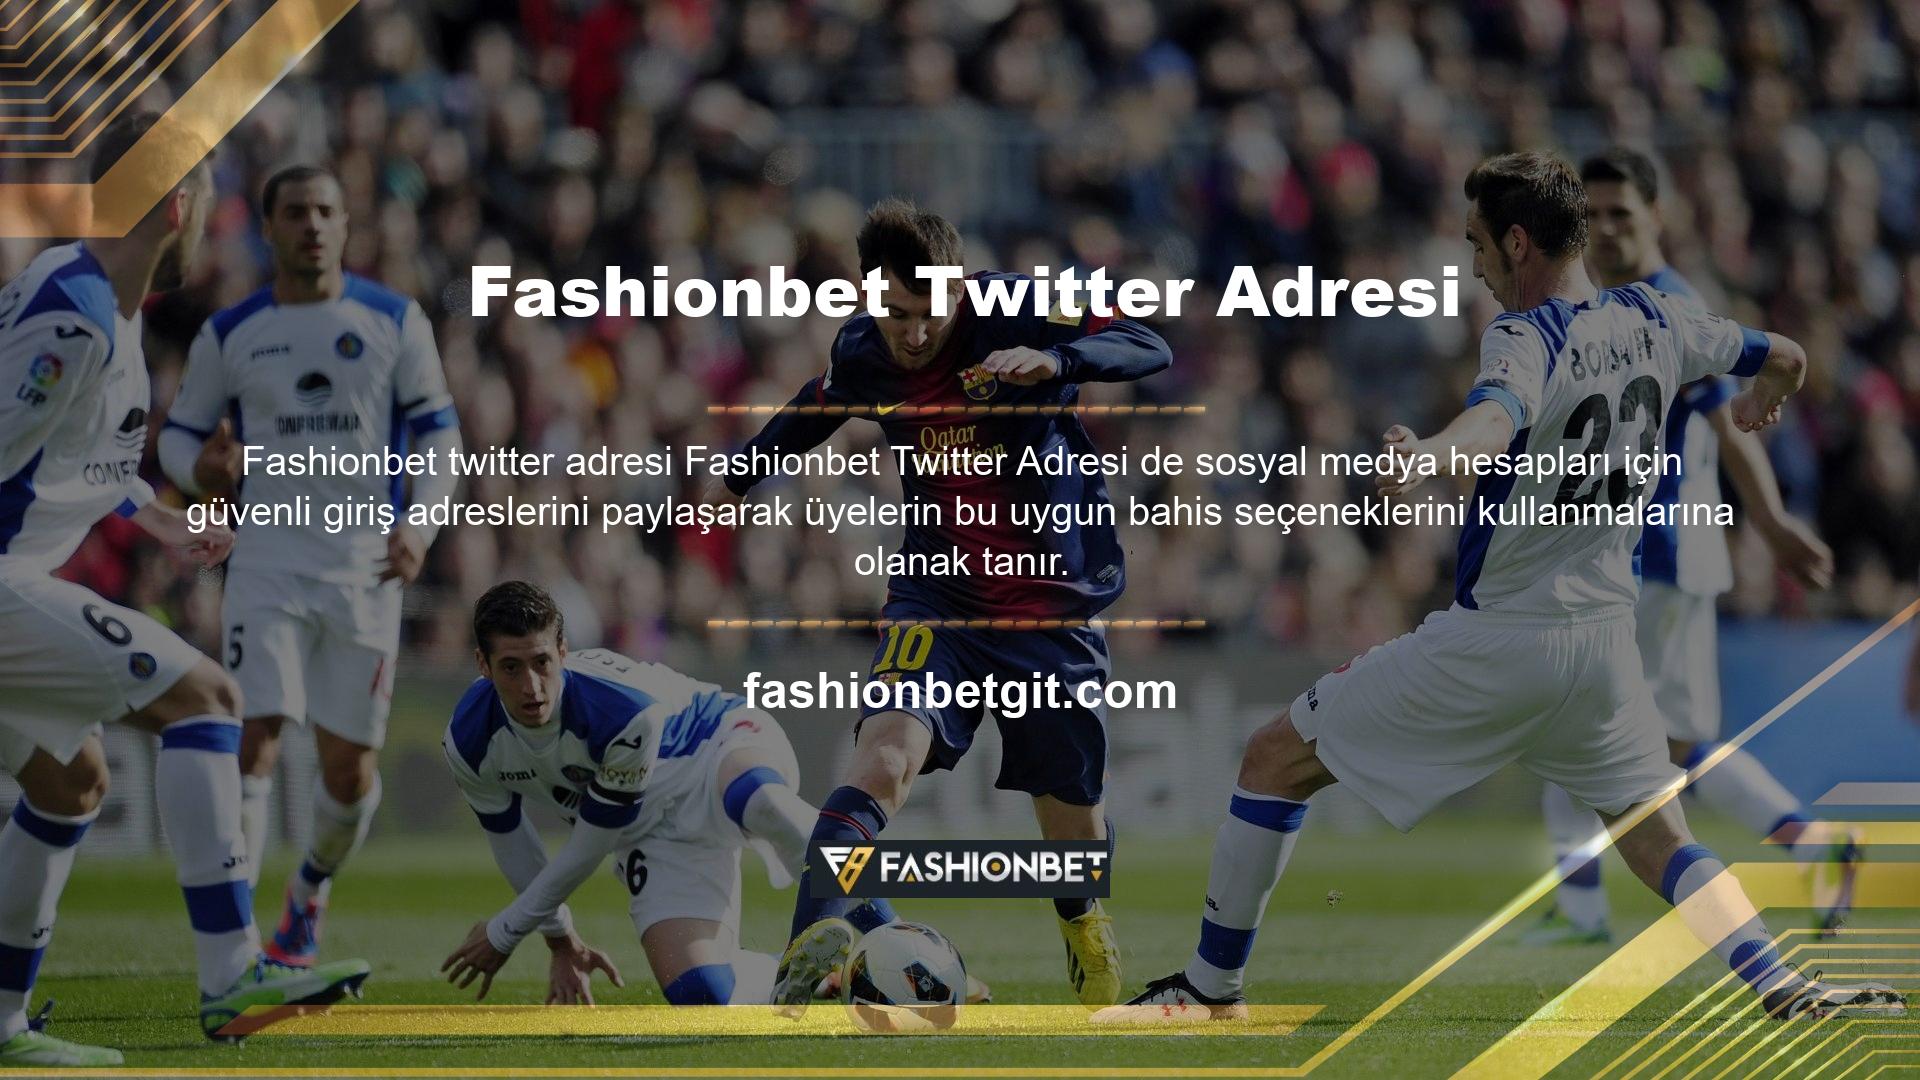 Sonuçlar, maç saatleri, bahis seçenekleri ve yeni promosyon bonusları hakkında en son bilgiler için Twitter'da Fashionbet takip edin